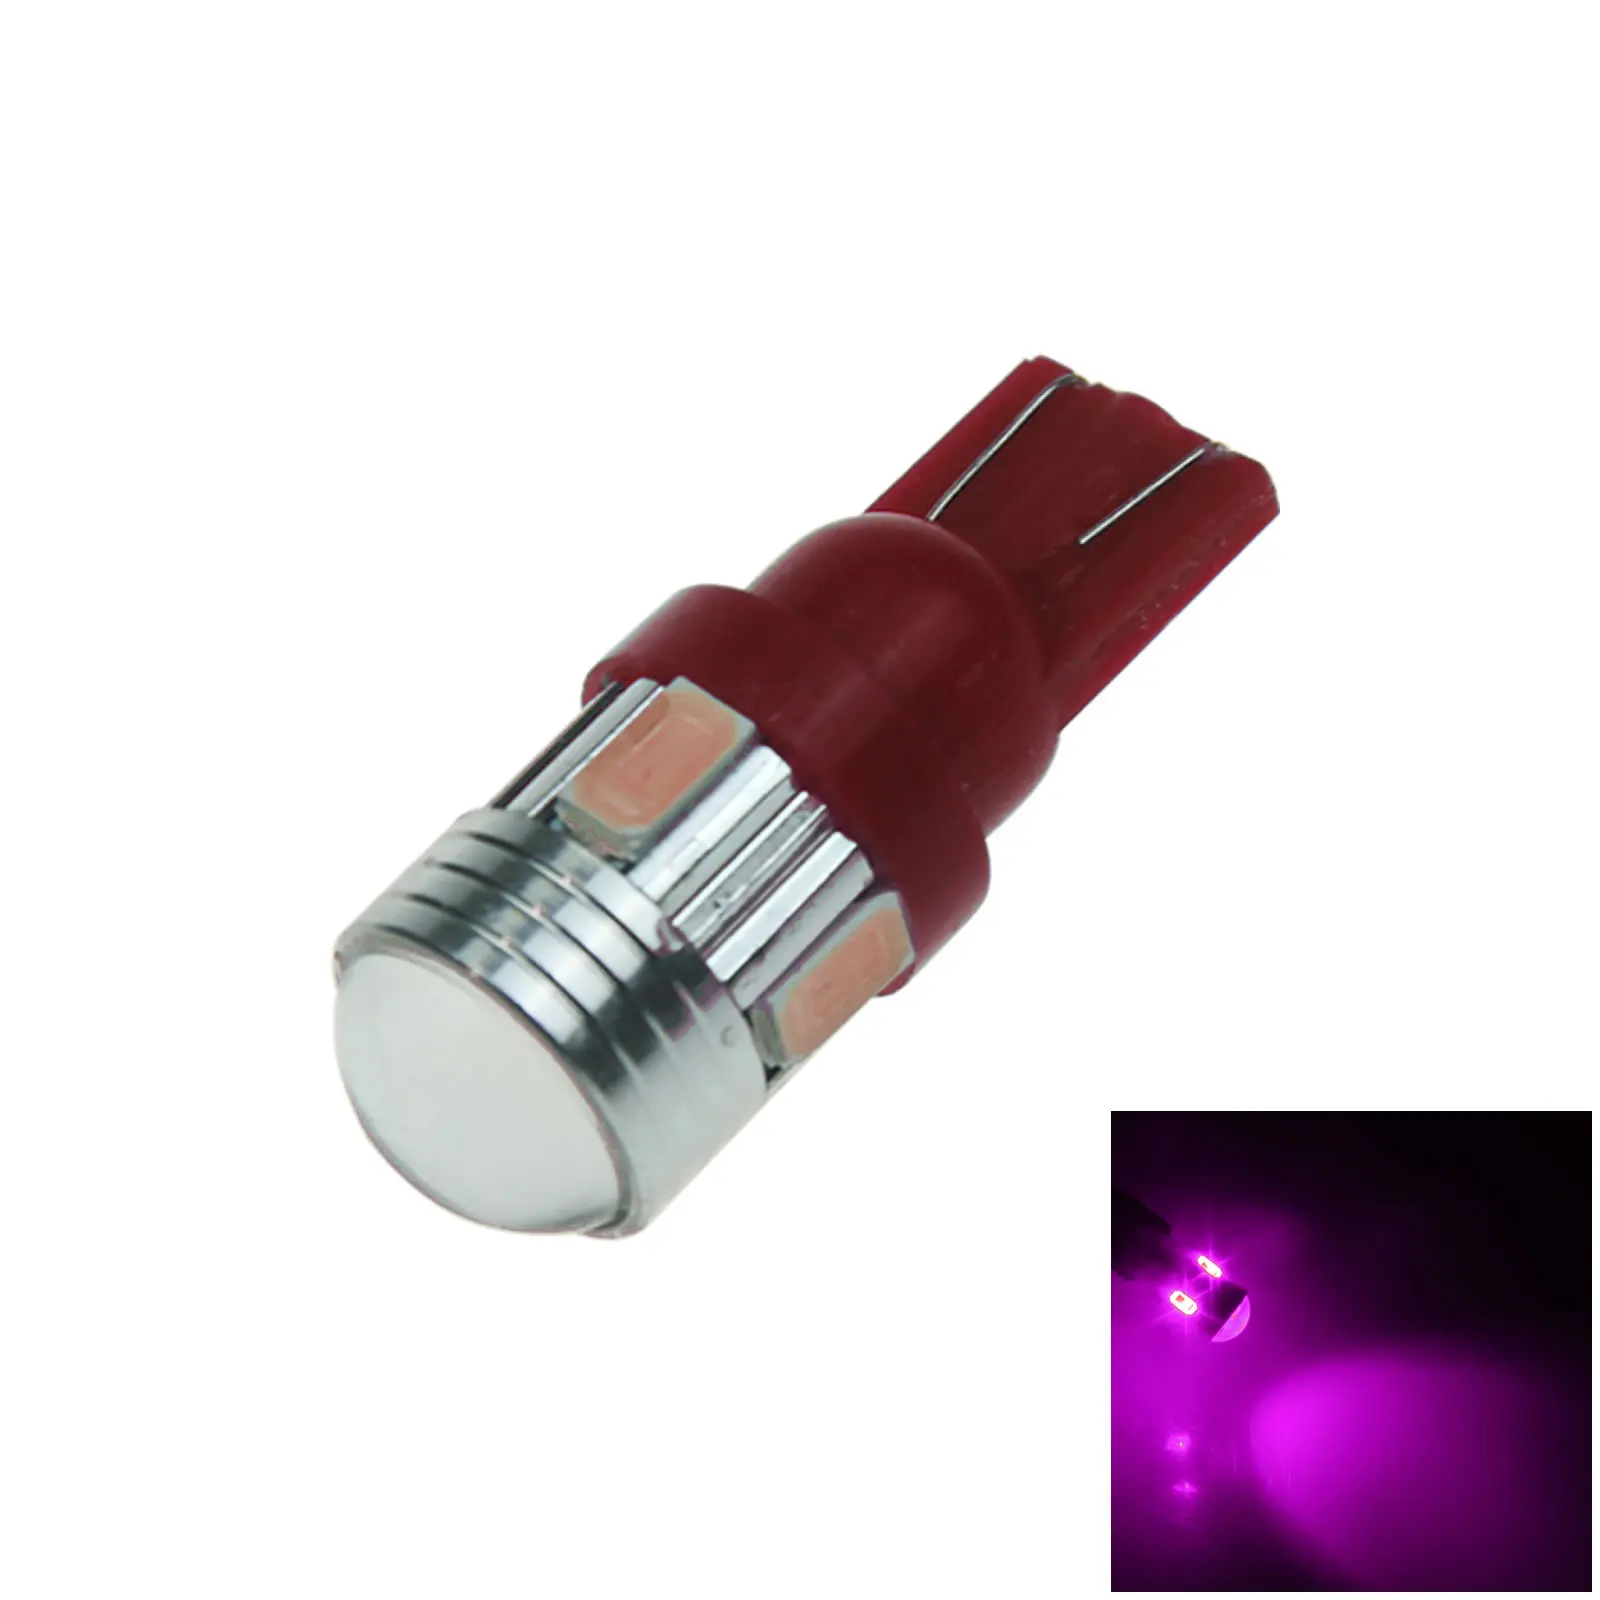 Звездный излучатель 6. Фиолетовая led лампа 12v.